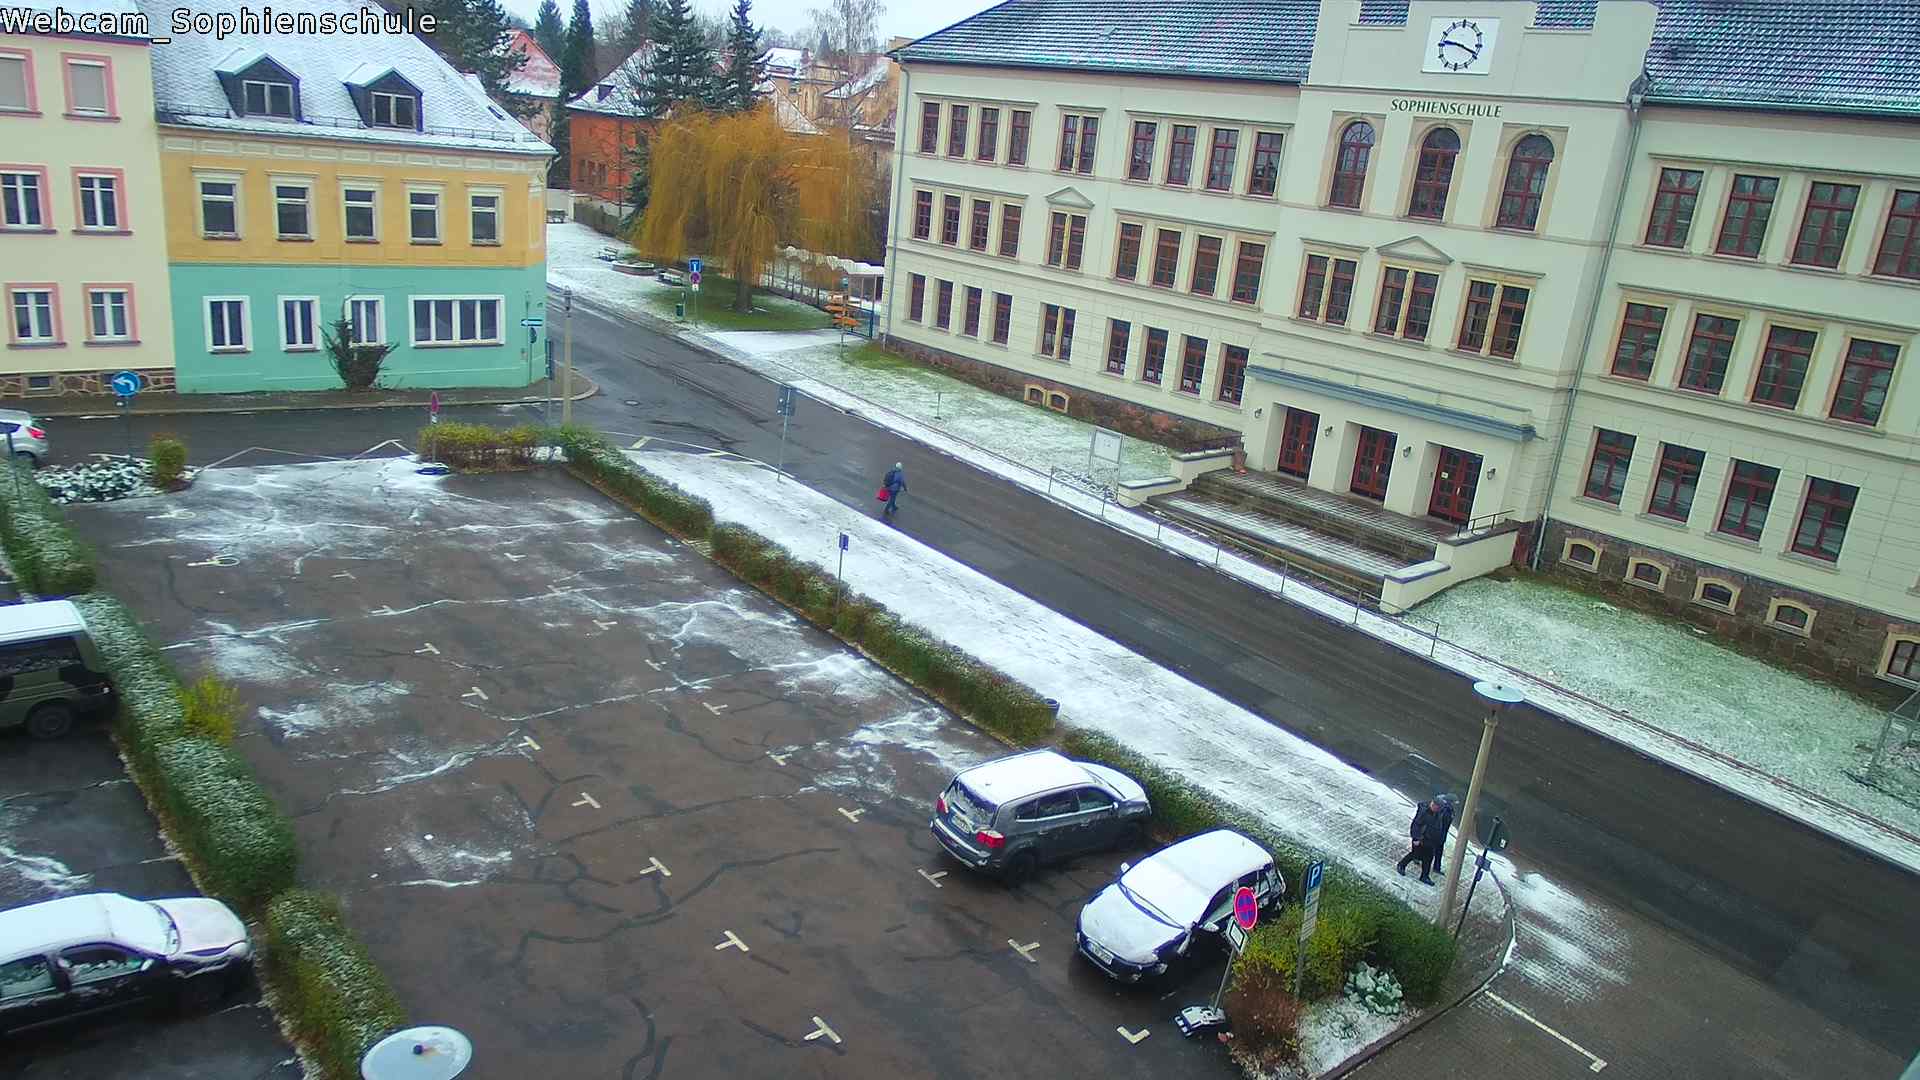 Sophienschule Colditz Live - Webcam